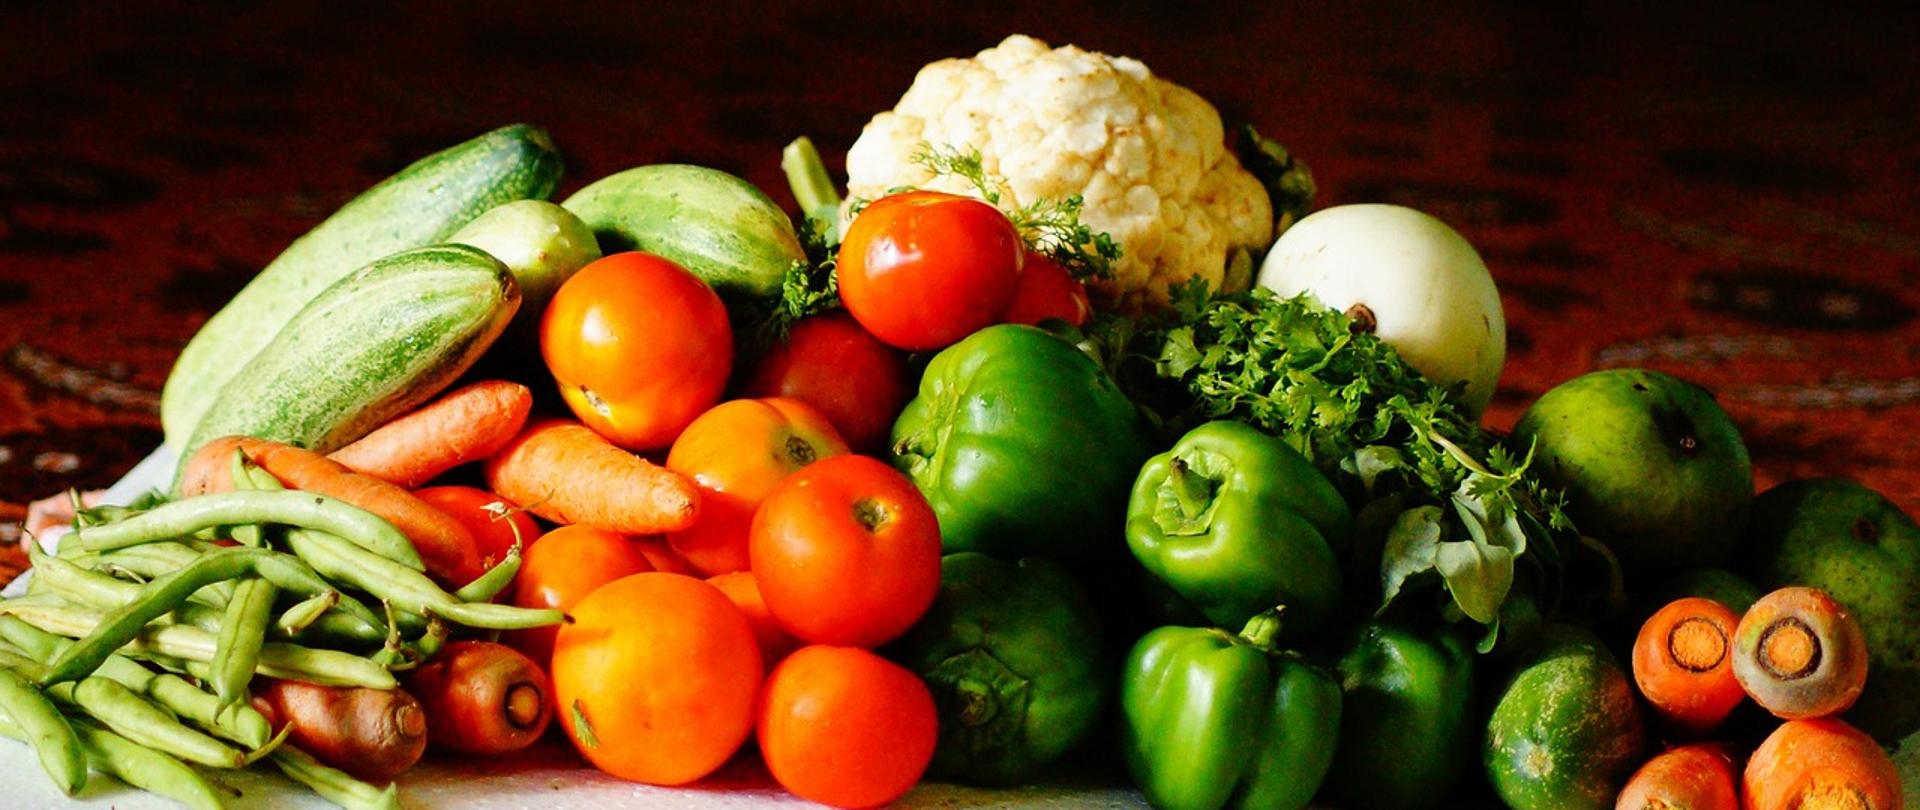 Na zdjęciu znajdują się warzywa, od lewej: fasolka szparagowa, marchewka, cukinia, pomidory, papryka, kalafior, cukinia, natka pietruszki, ogórek, marchewka.